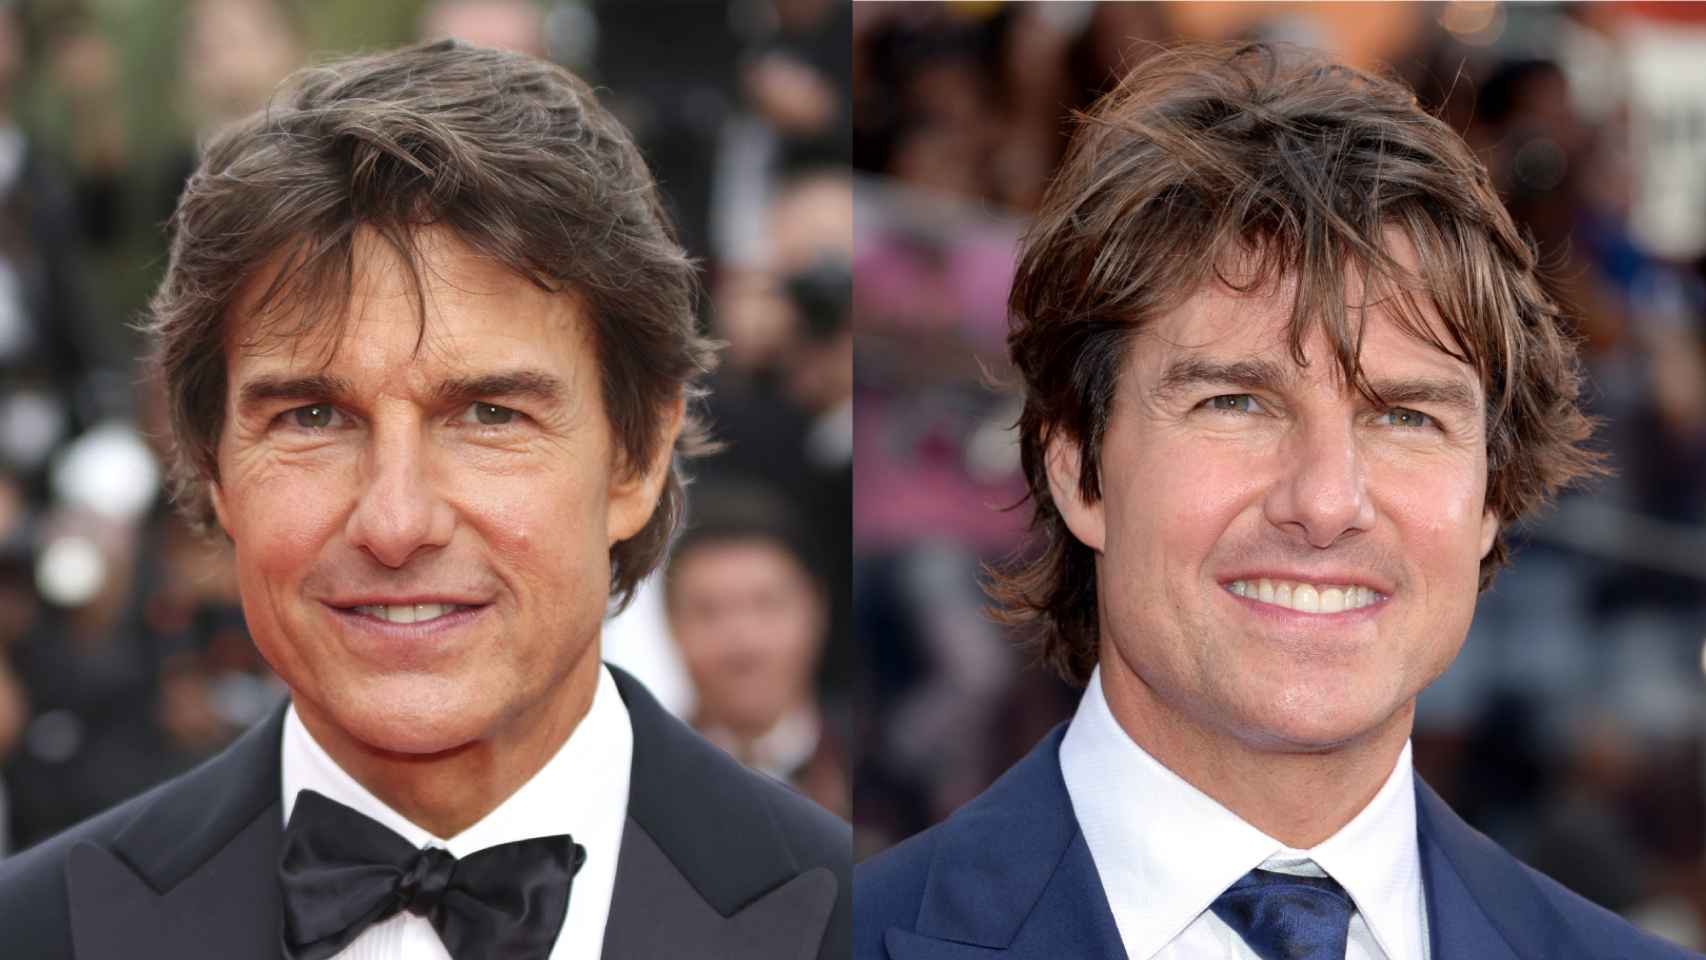 Tom Cruise en una imagen actual, a la izquierda, y en otra del año 2015, a la derecha.